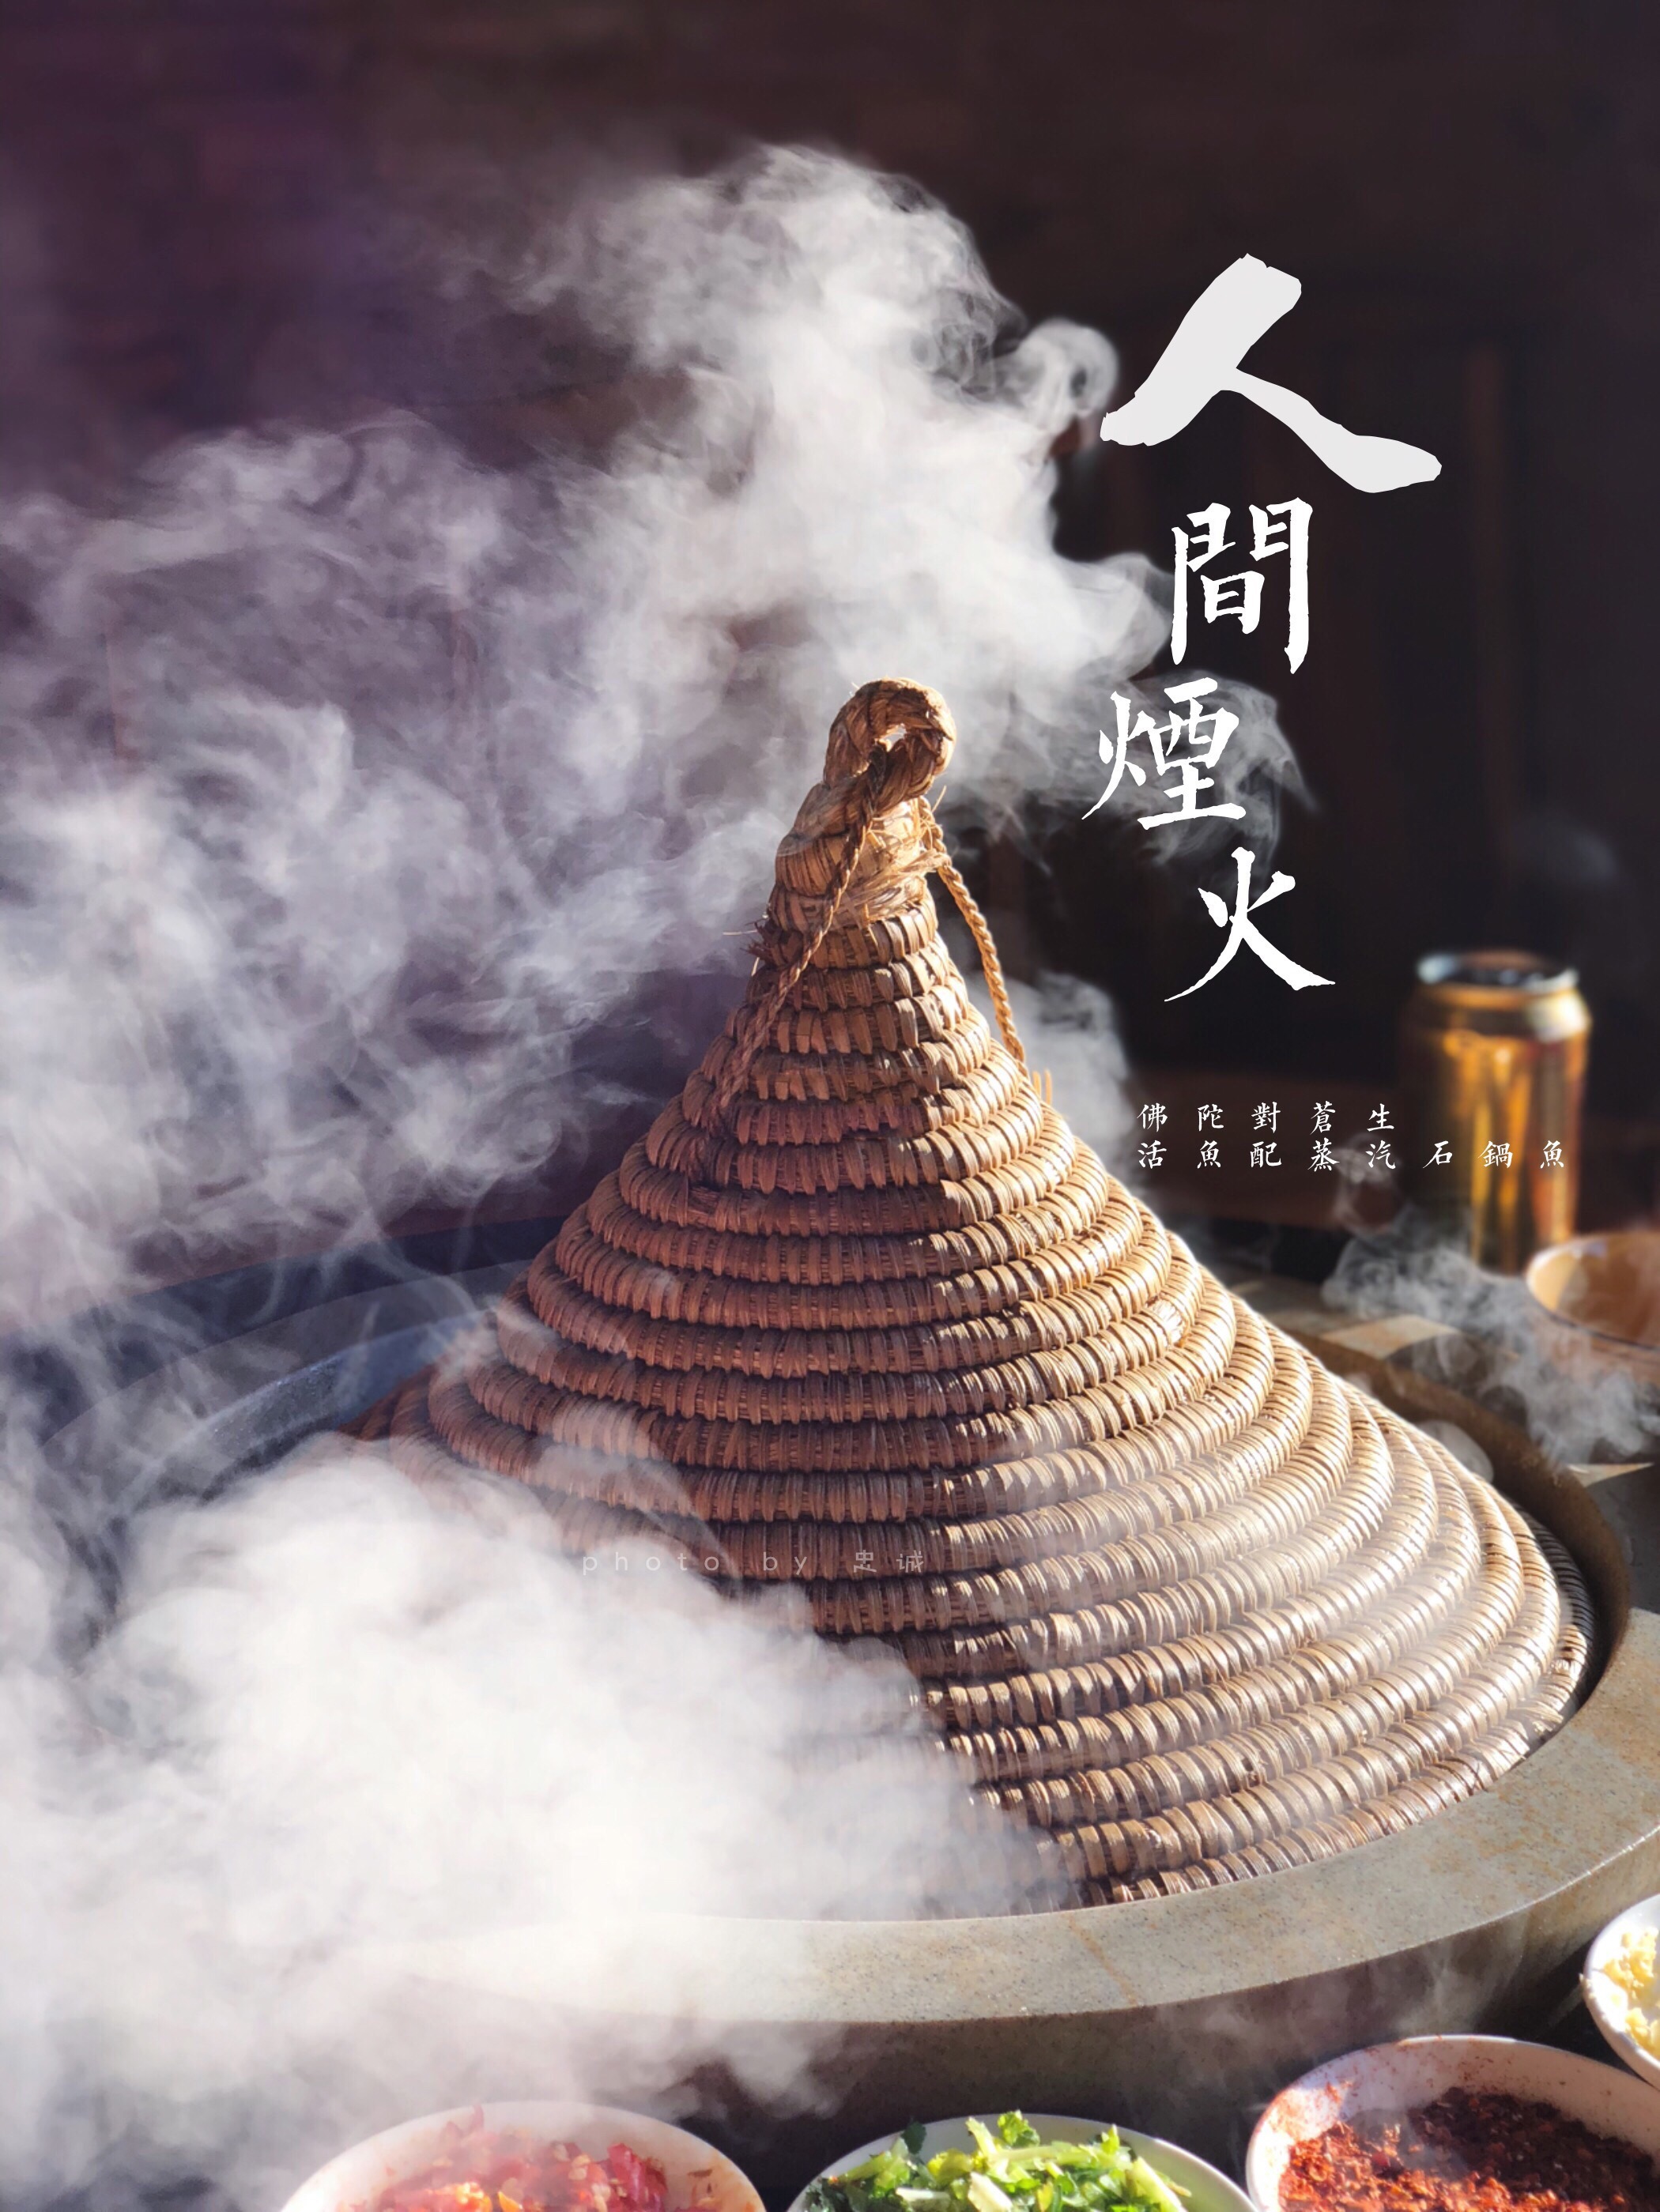 仙气撩人的蒸汽石锅鱼,蒸的好美味,冬日必尝